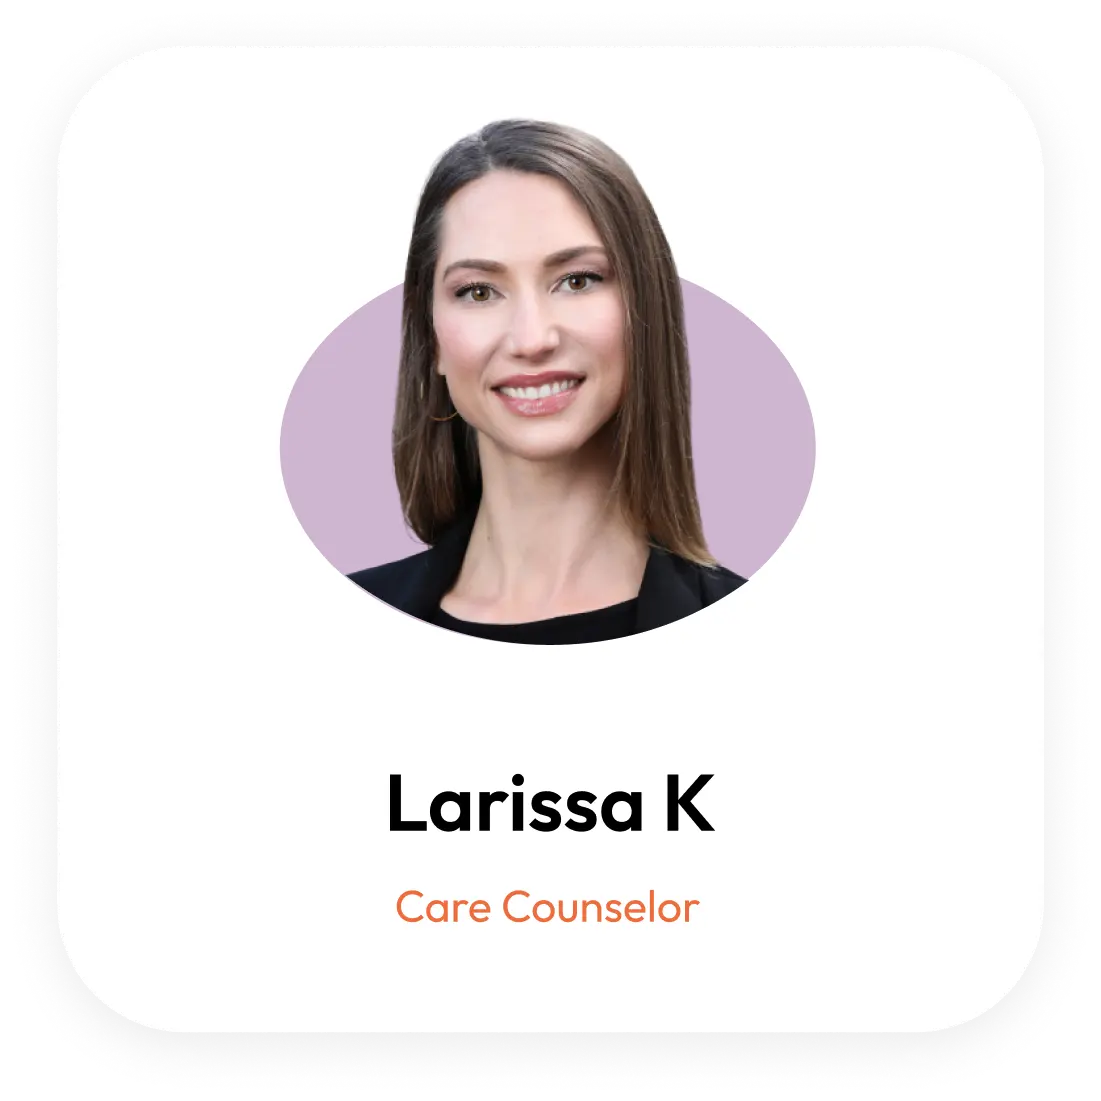 Larissa K